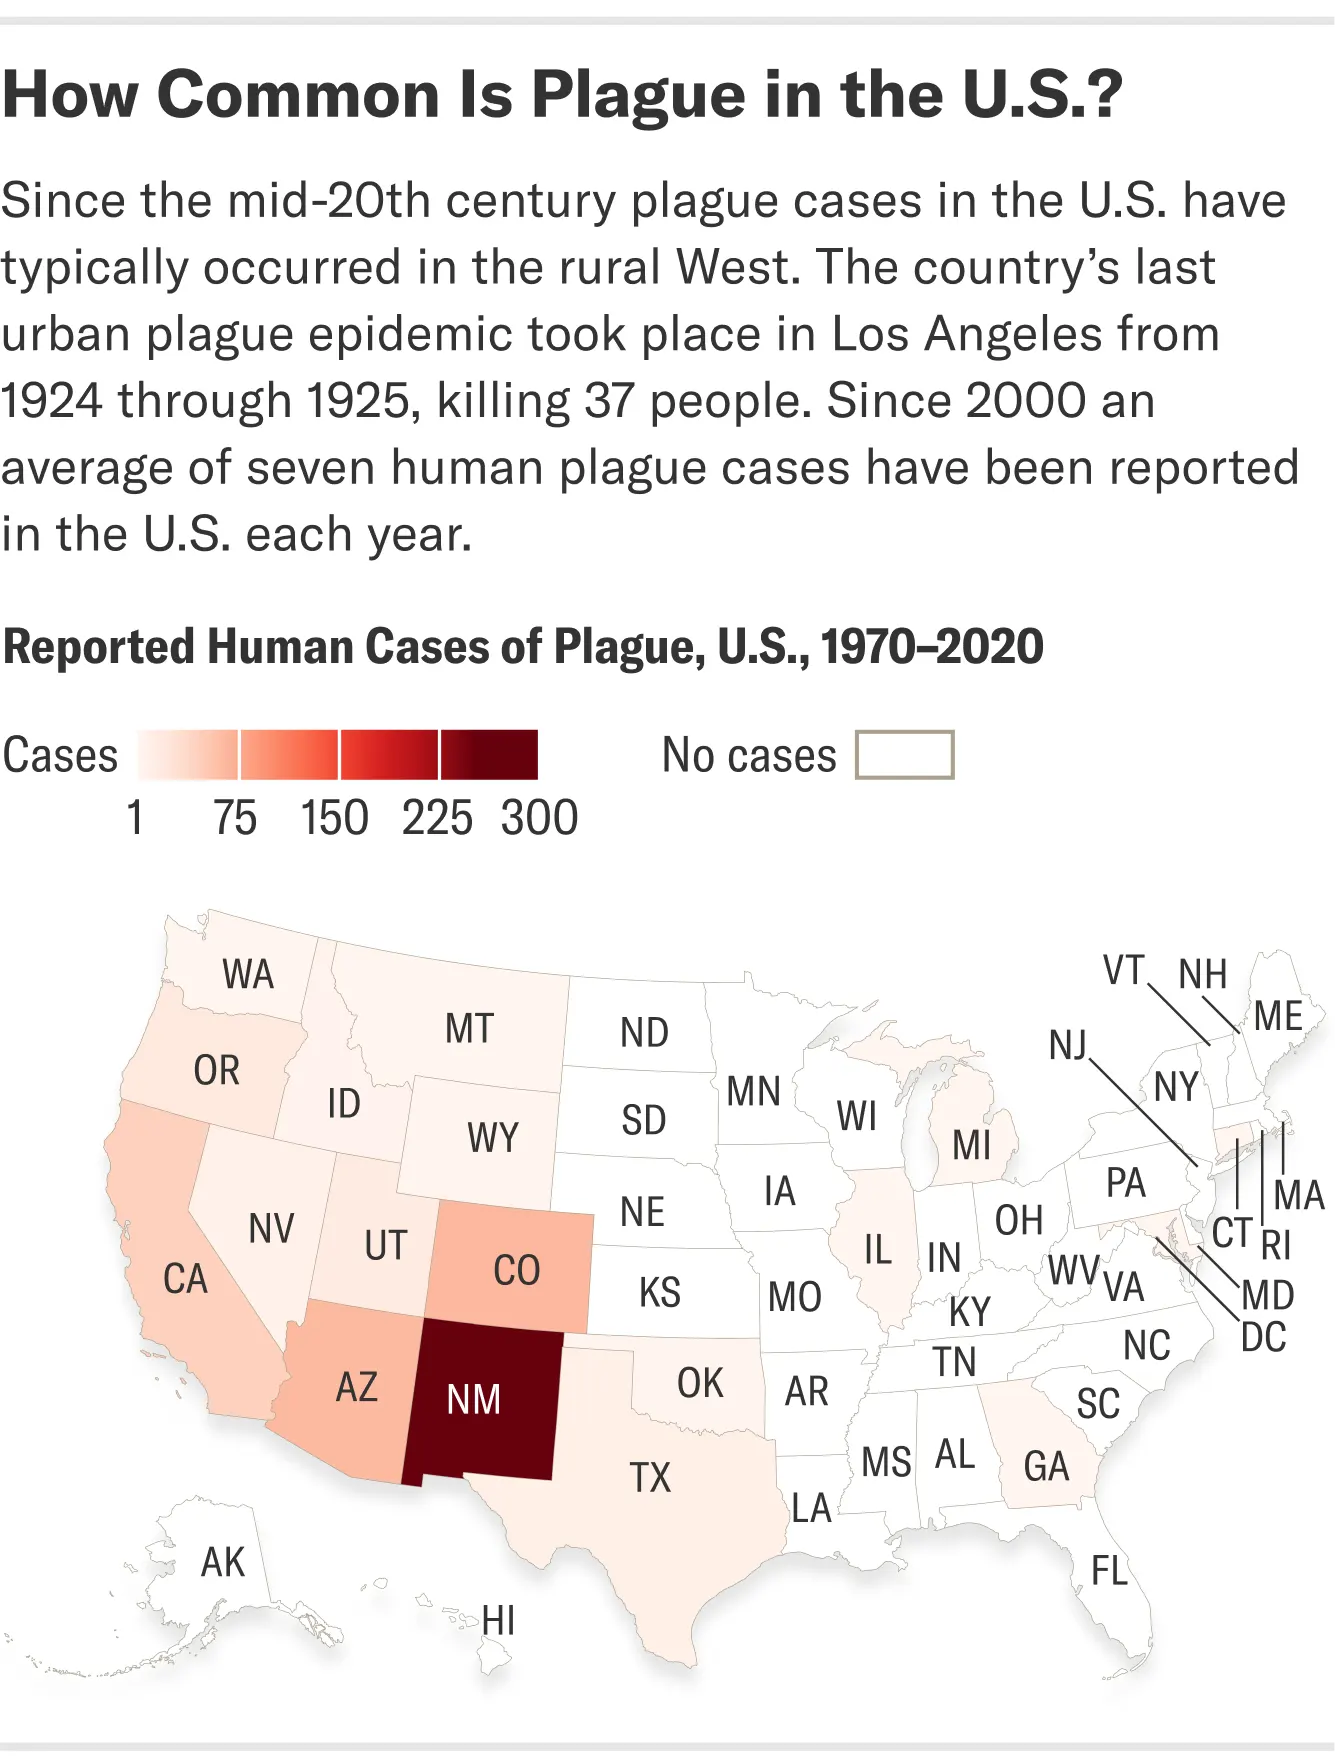 Врачи в США диагностируют около 10 случаев чумы в год